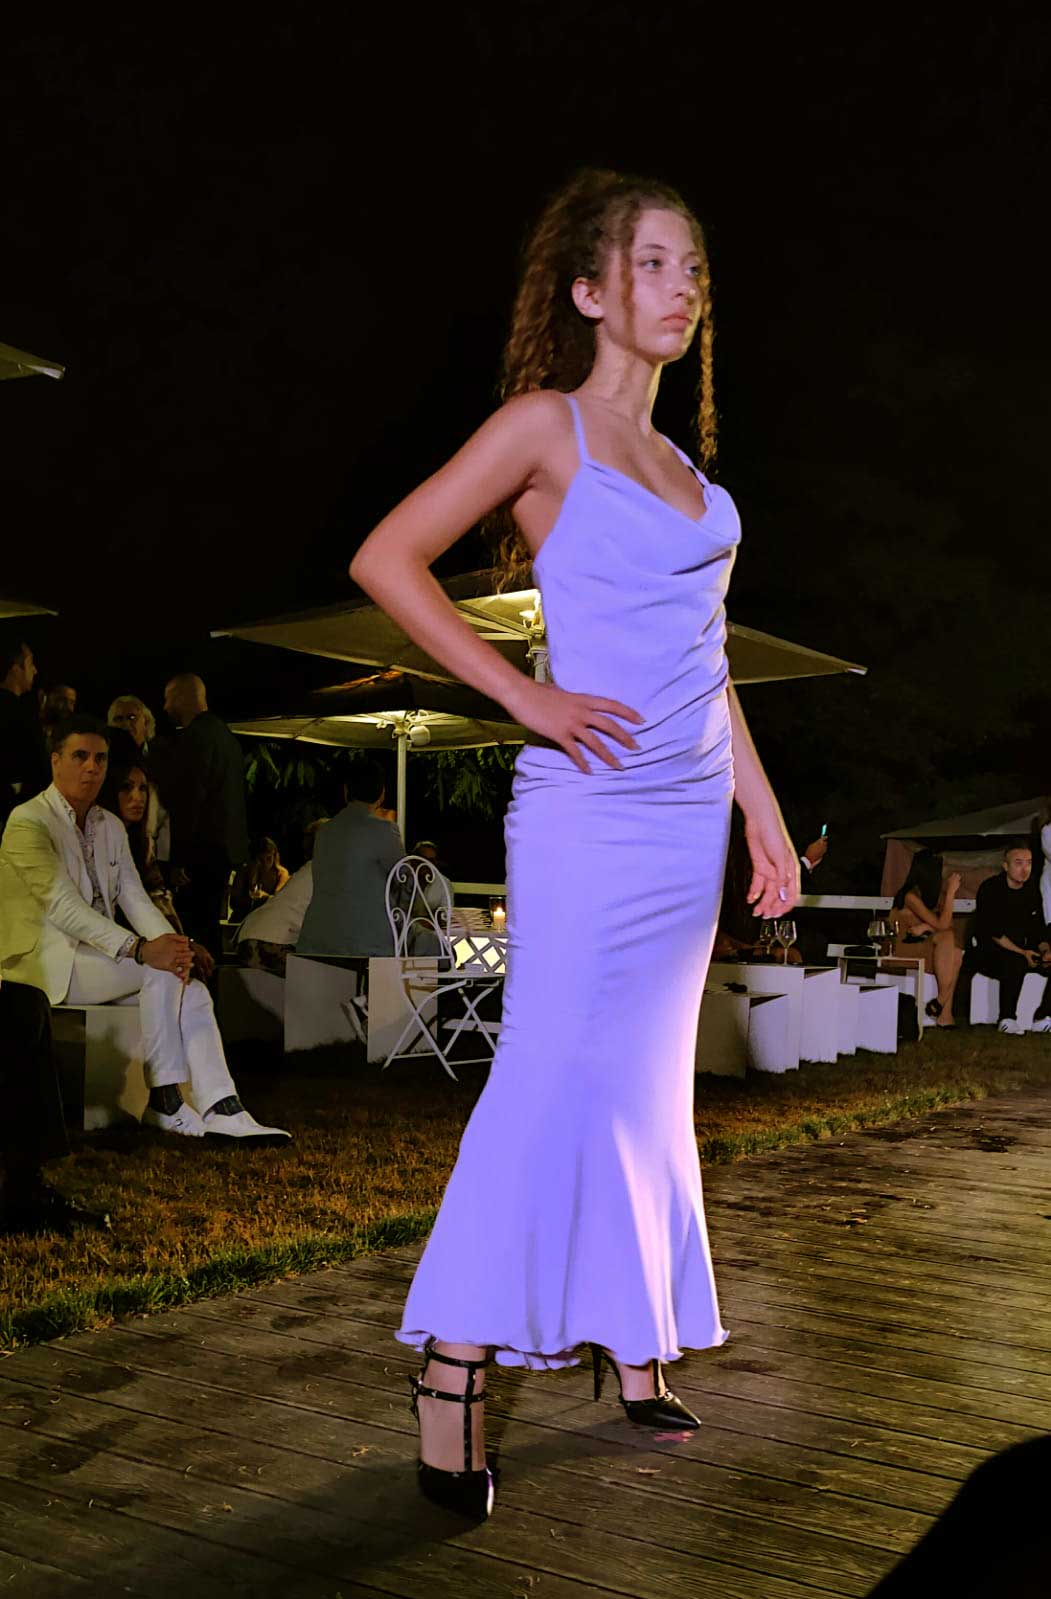 Evento World Top Model Roma sfilata abiti con modelle - location Profumo Spazio Sensoriale. La stilista presenta vestiti da cerimonia donna Elins moda